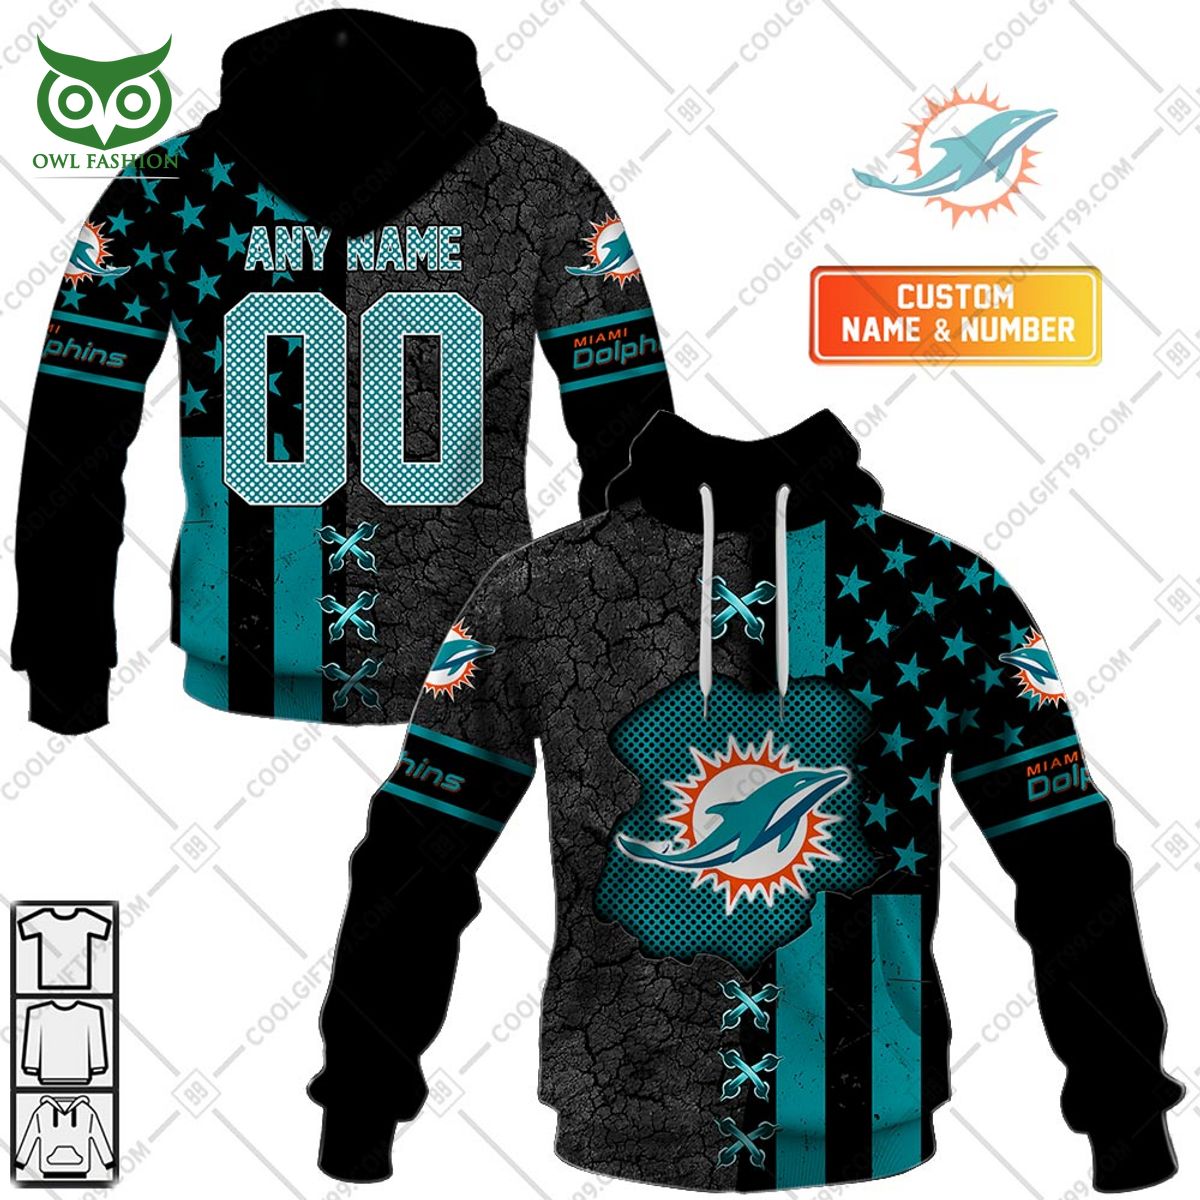 Miami Dolphins USA flag NFL custom printed hoodie shirt